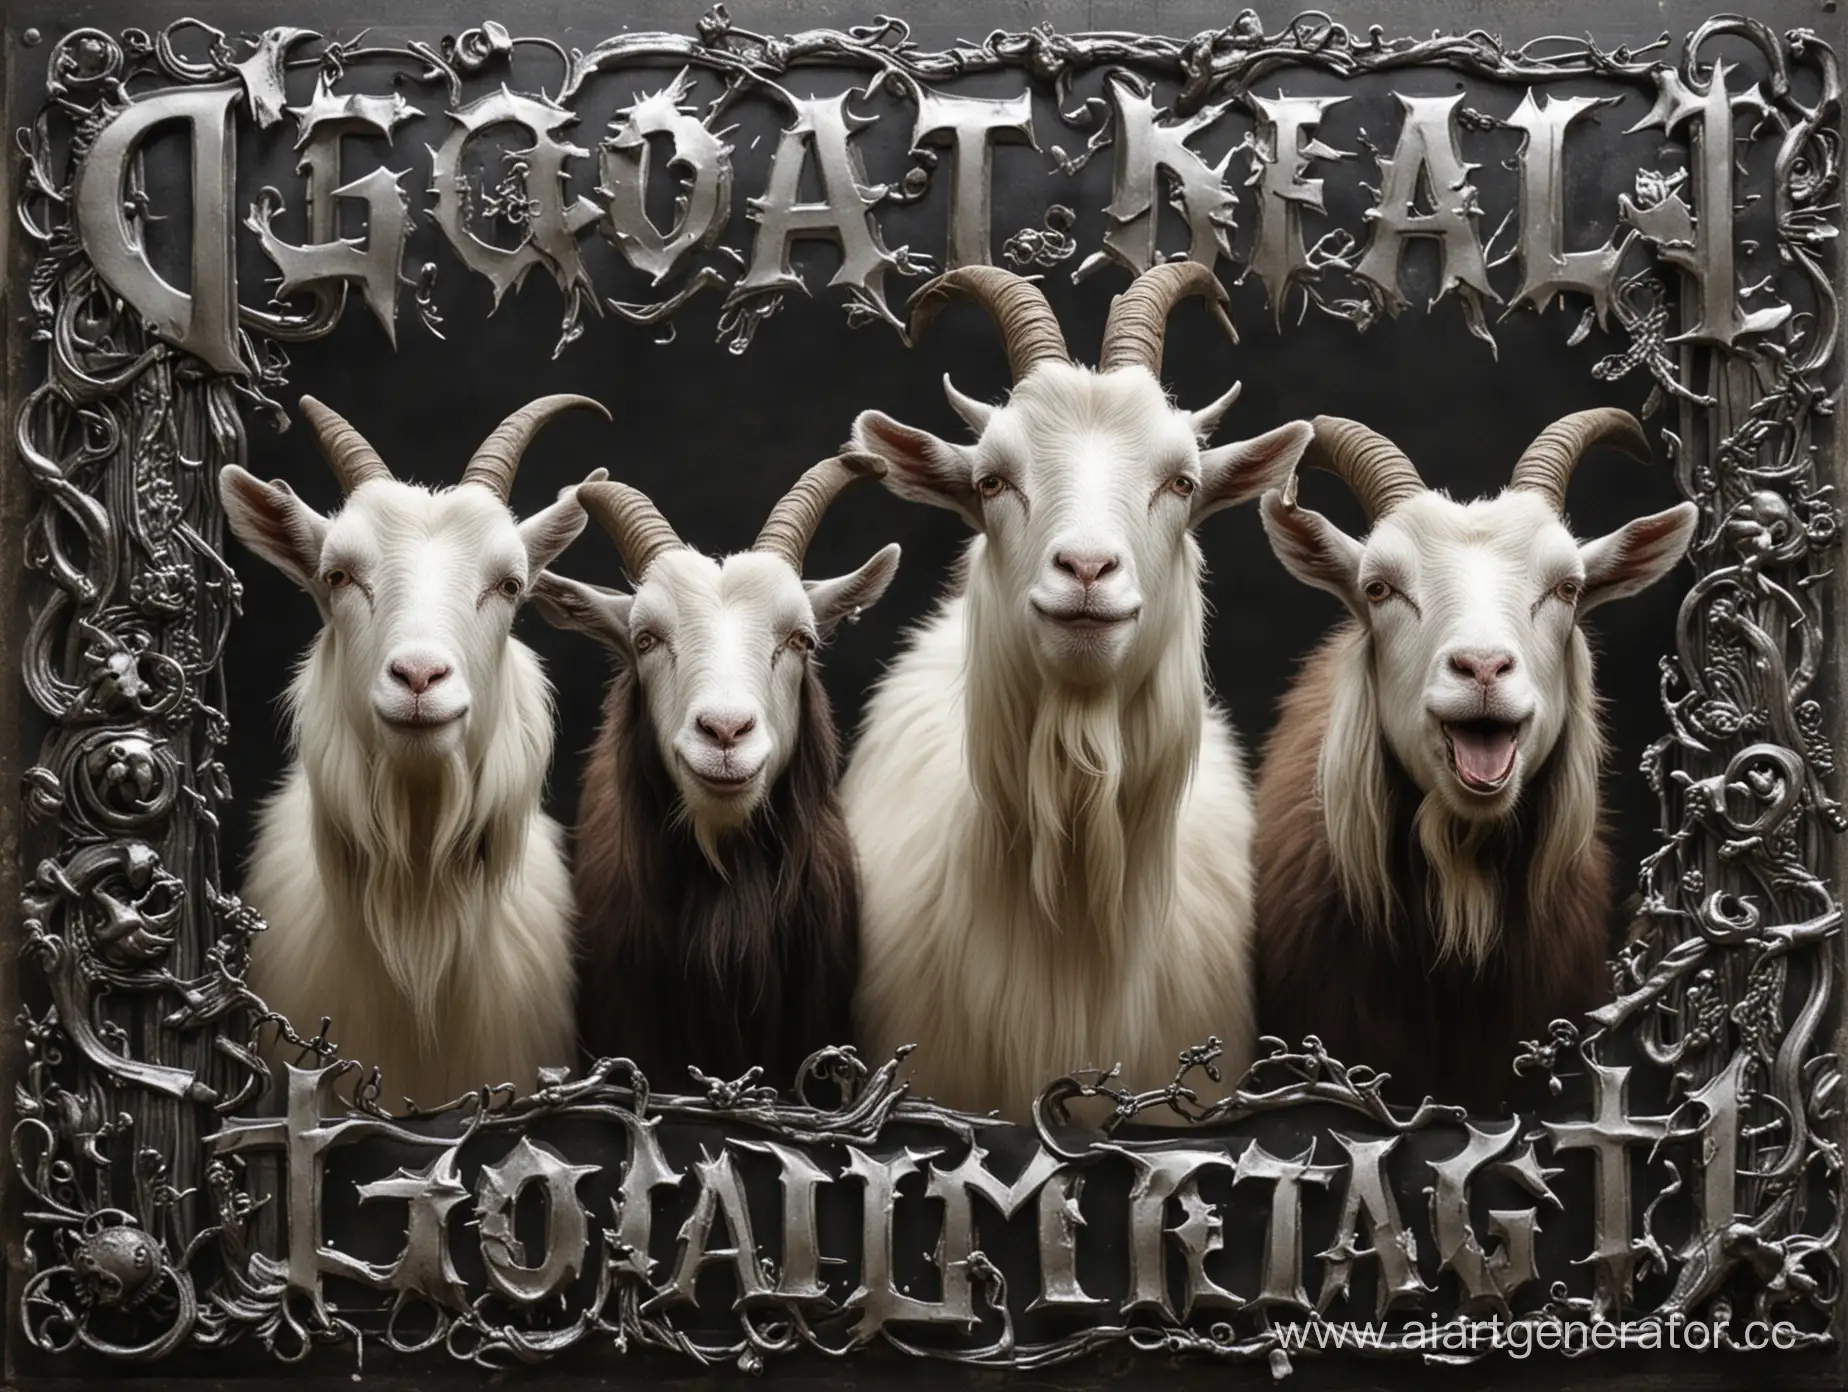 Goat metal